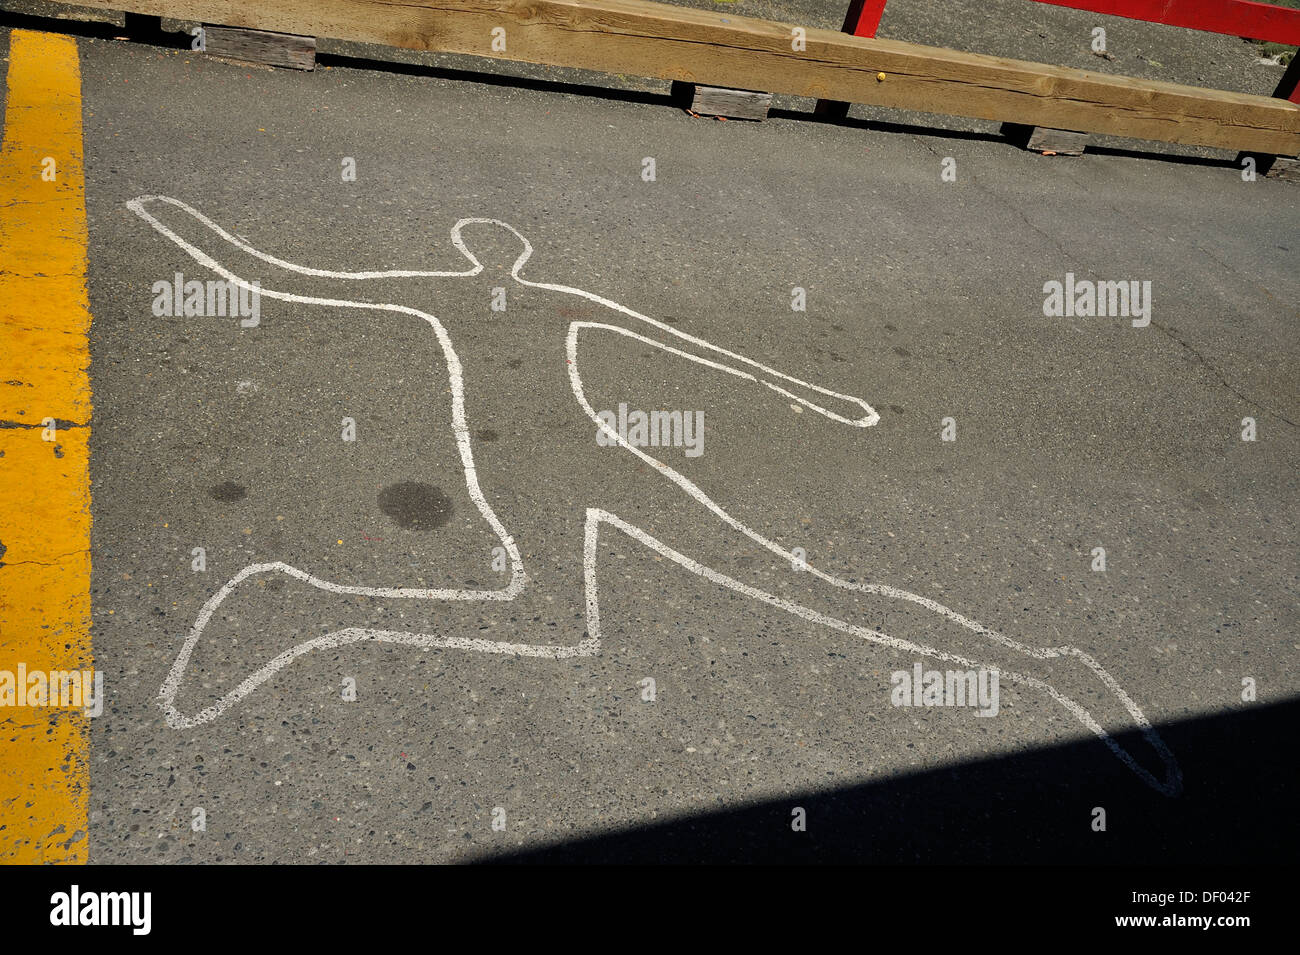 Die Kreide Umrisse zeigen, wo eine Person gelegt hatte Stockfoto